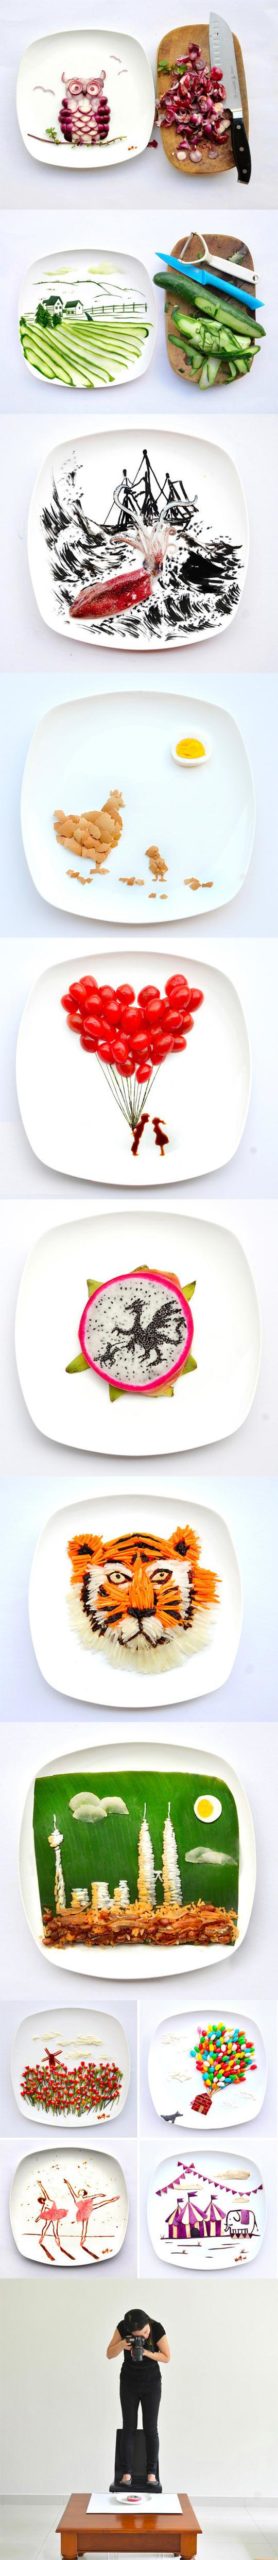 Food+art